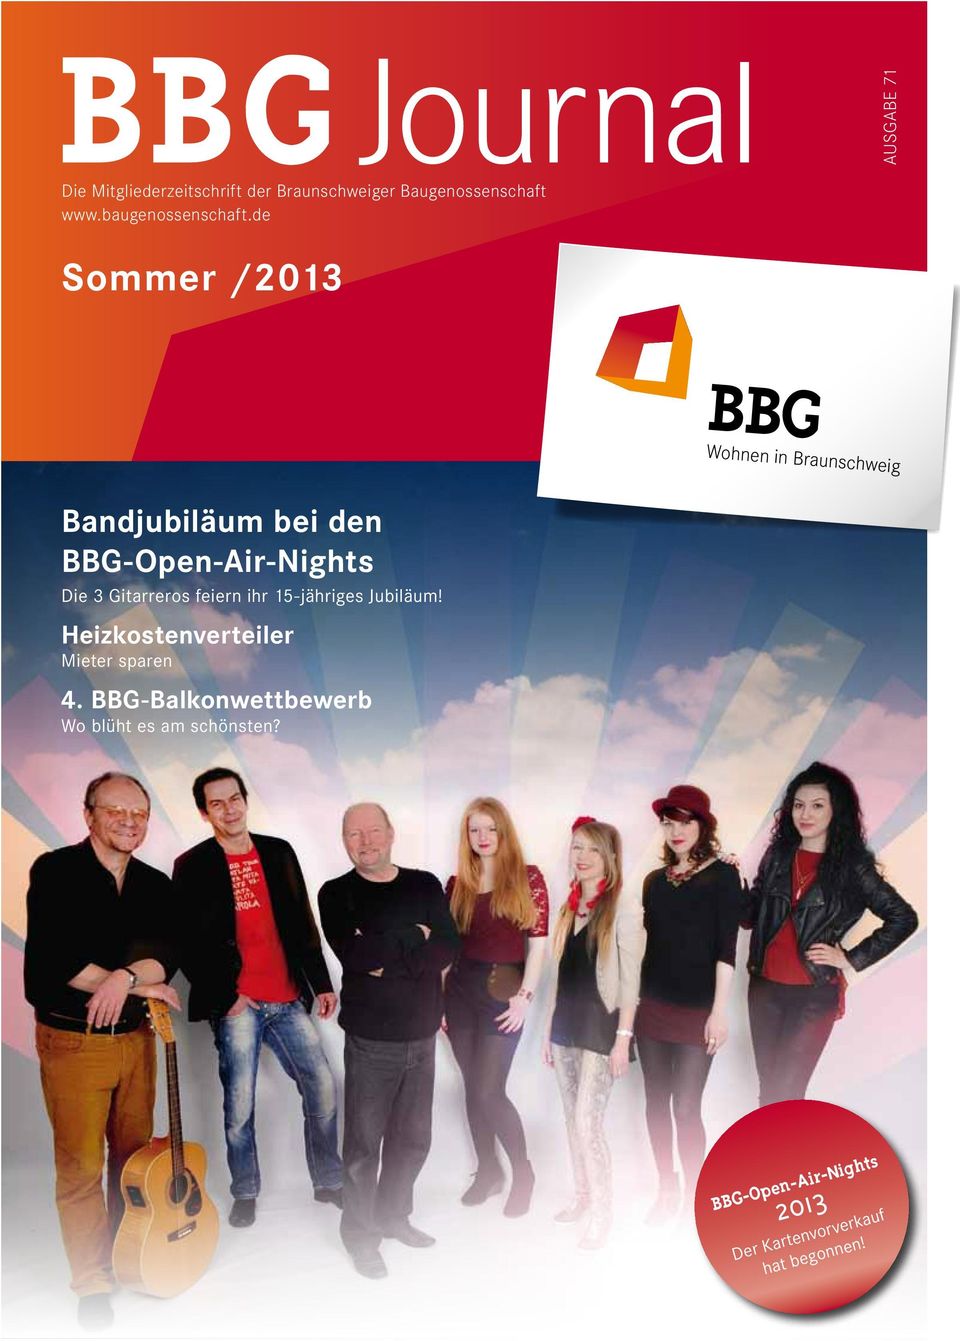 de Sommer /2013 BBG Wohnen in Braunschweig Bandjubiläum bei den BBG-Open-Air-Nights Die 3